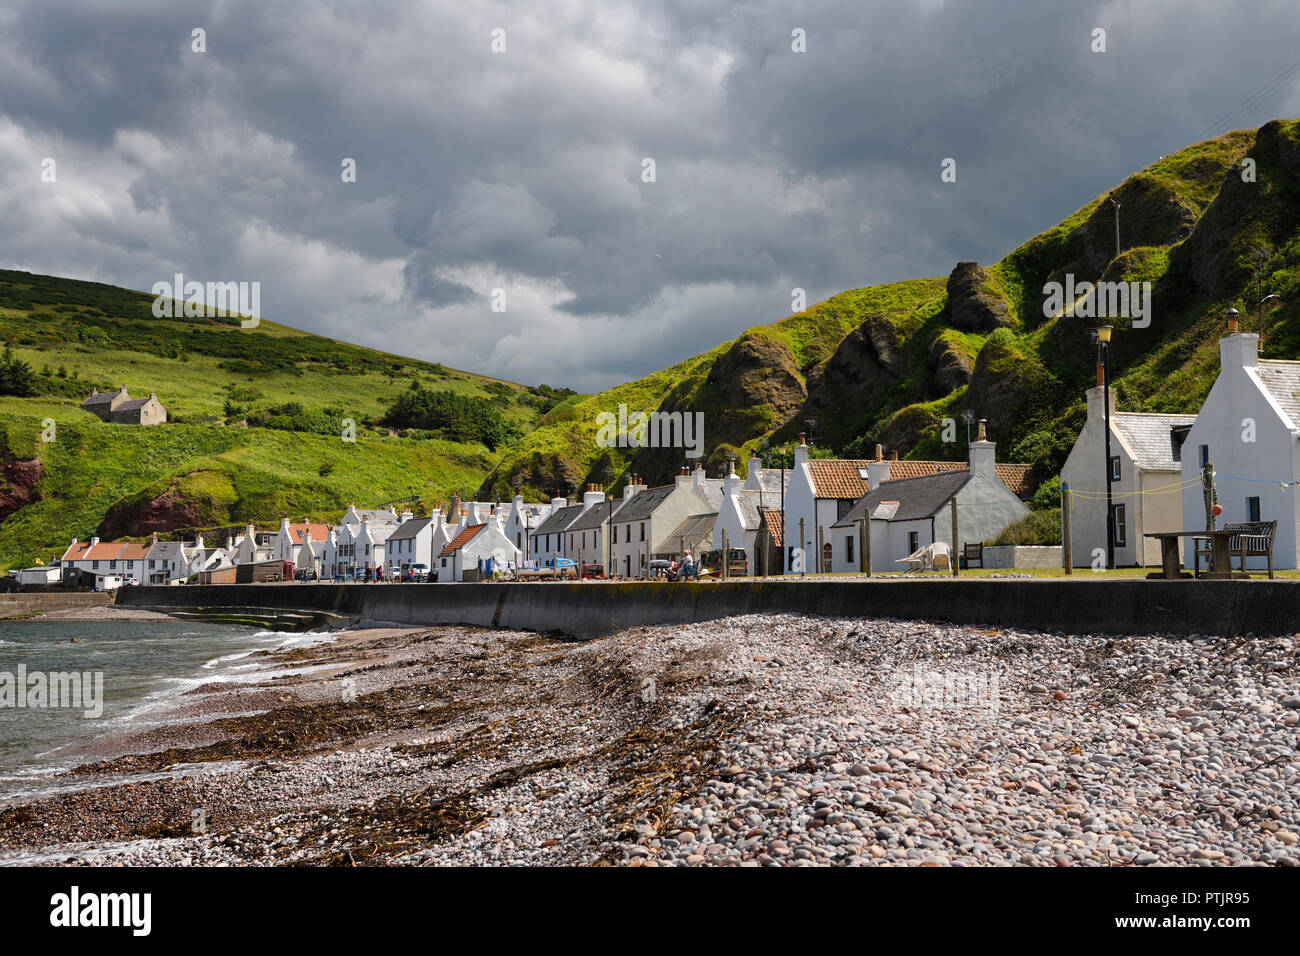 La plage de pierre et rangée de maisons blanches de Pennan coastal village de pêcheurs sur la mer du Nord dans l'Aberdeenshire Ecosse UK avec des falaises de mer verte Banque D'Images